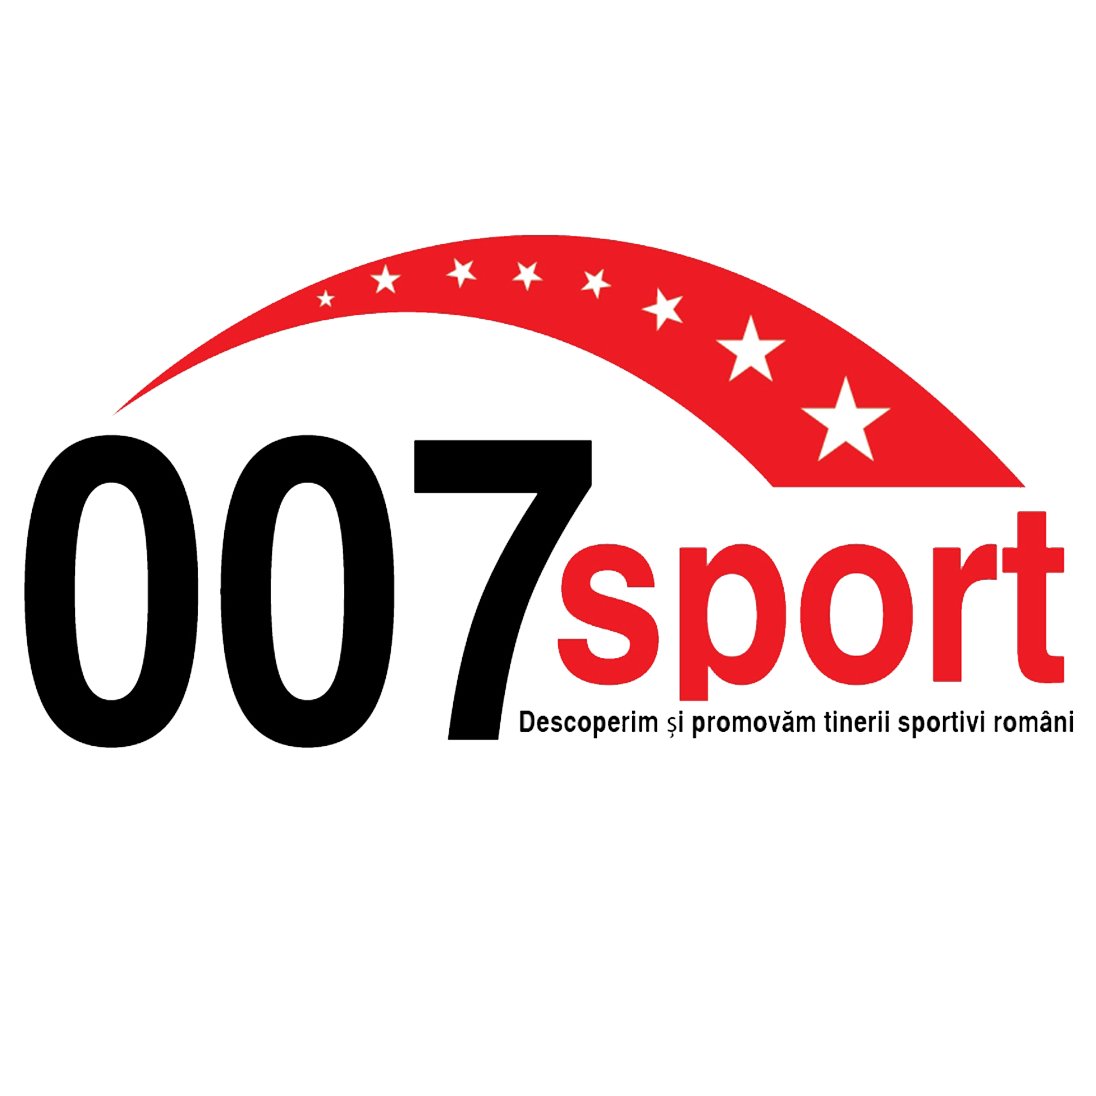 007sport își propune să descopere, să urmărească și să promoveze tinerii sportivi din România.